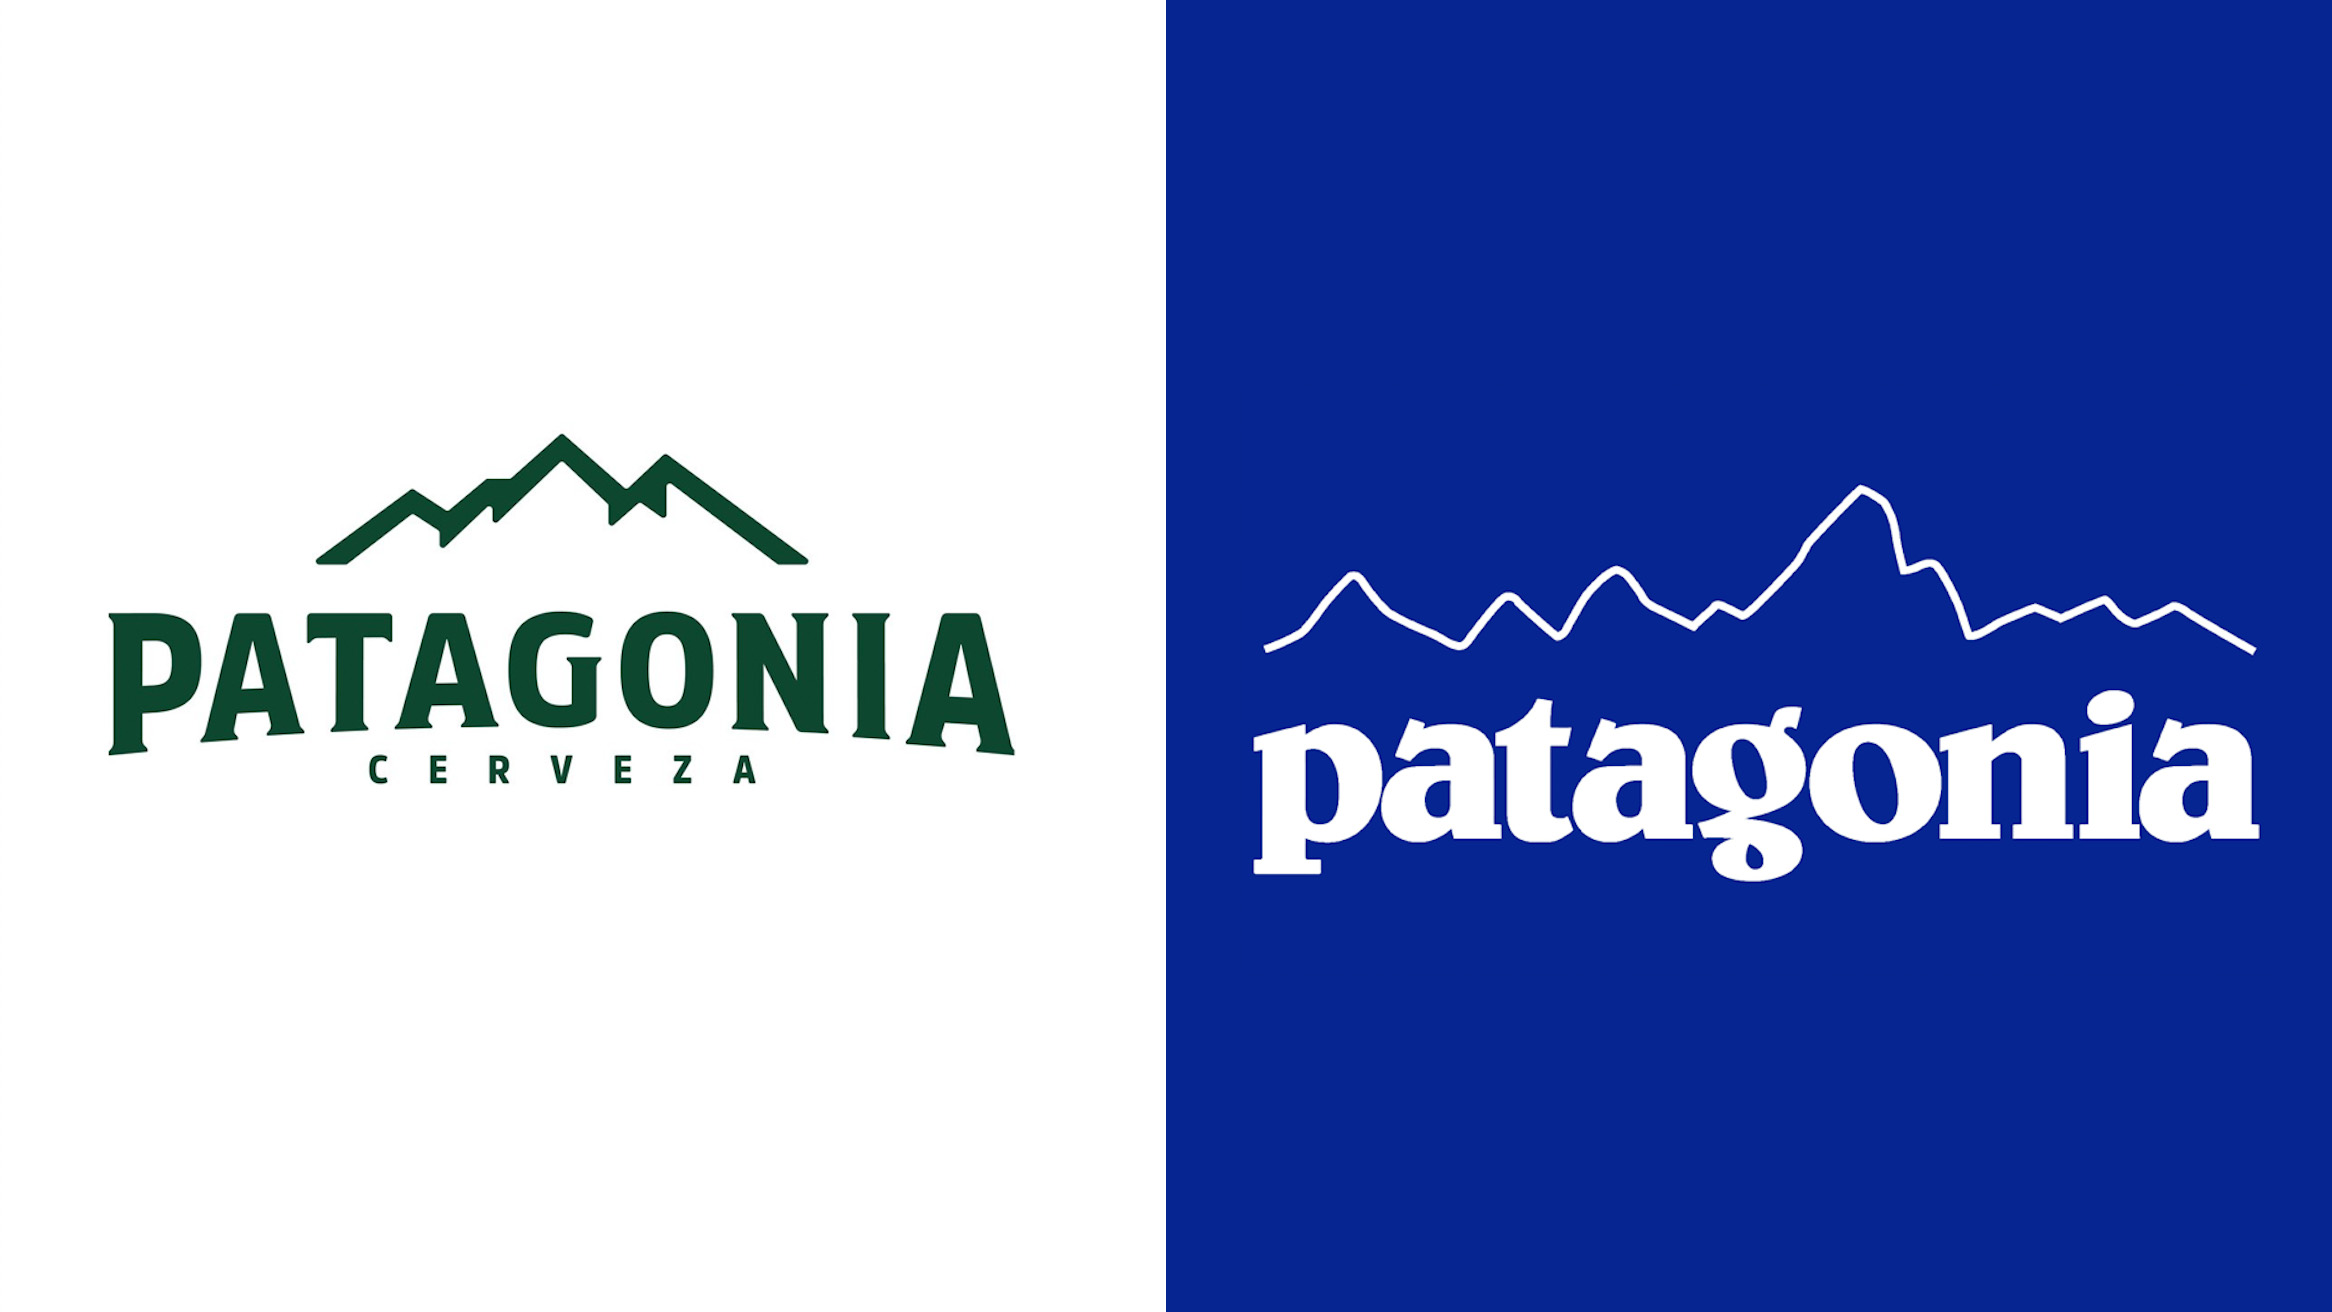 Brandemia_ on Twitter: "La marca de @Patagonia demanda a la marca de cerveza, también @CvzaPatagonia, por usar su mismo #naming. Teniendo en cuenta que no es un nombre inventado que pertenece